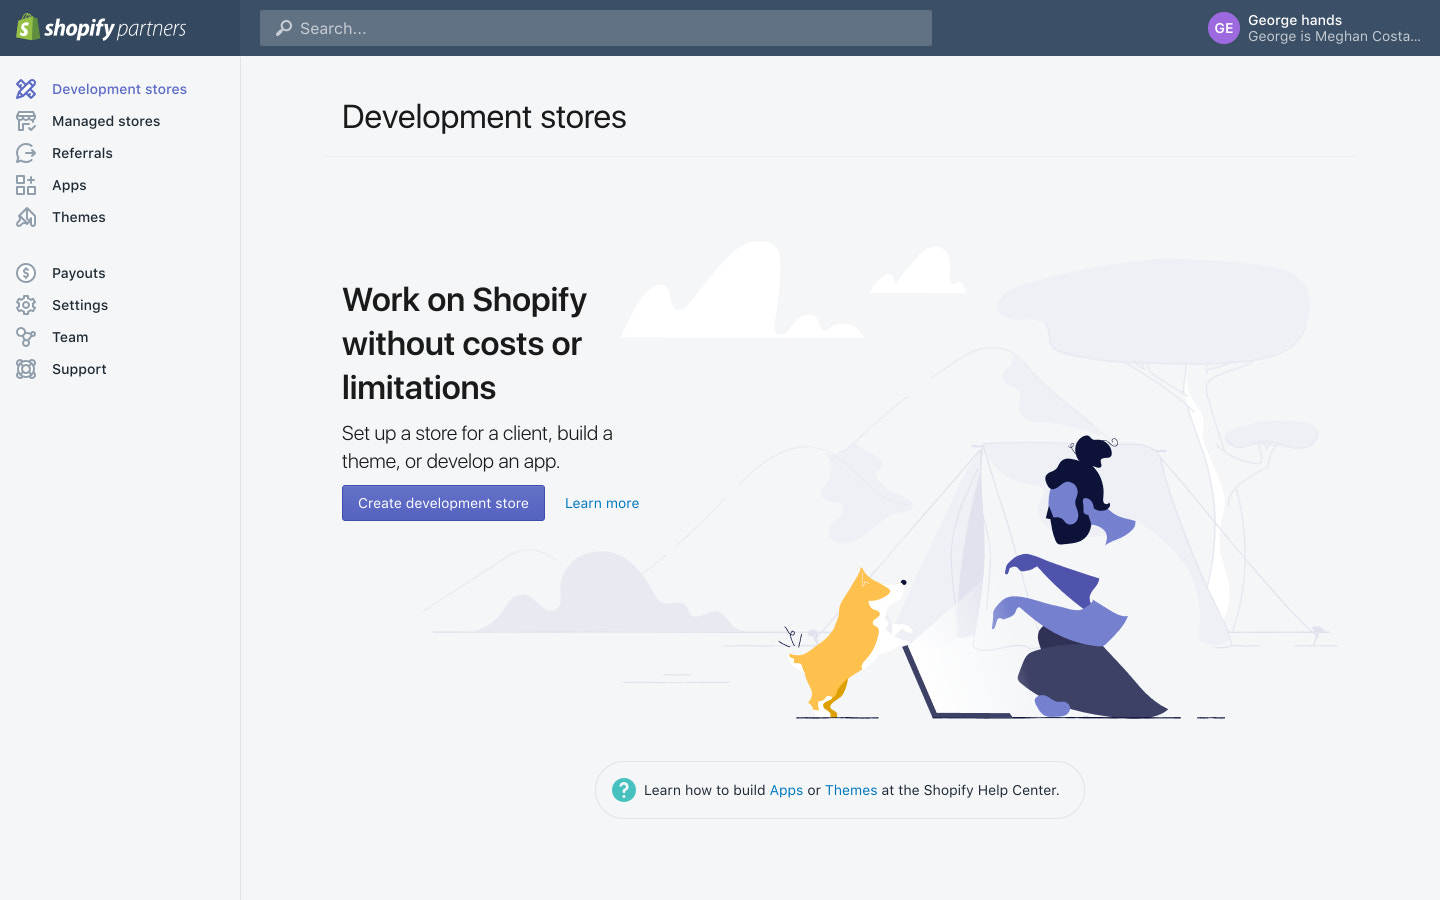 Shopify Login For Admin, Partner Dashboard, & Customer